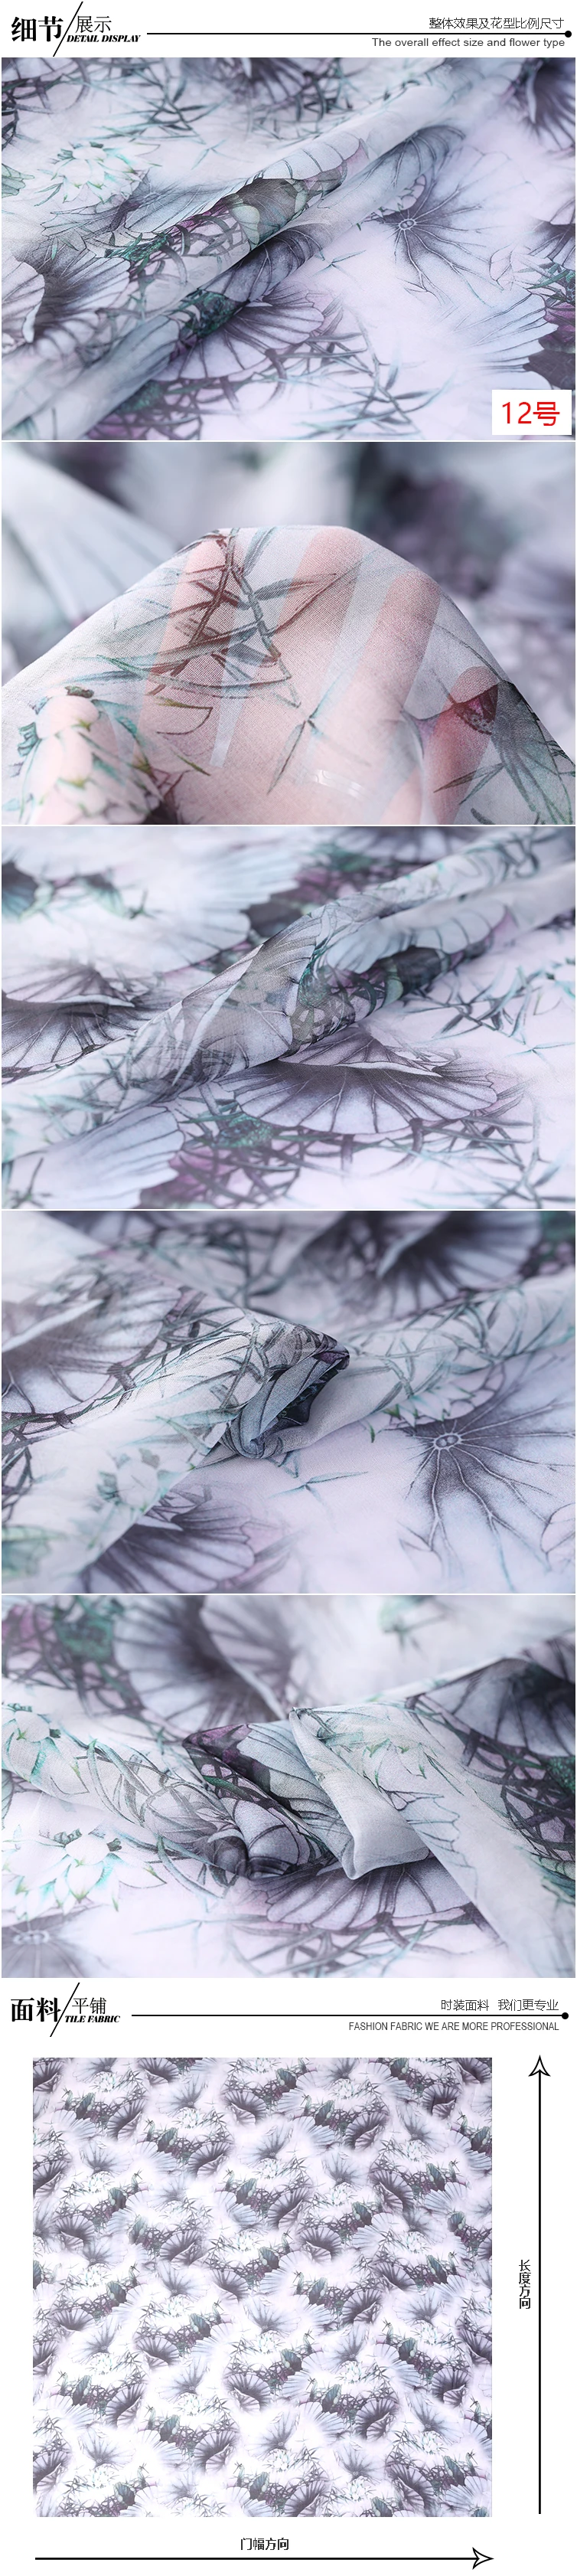 110 см широкий заказ шелк 8 мм шелк с цифровой печатью жоржета ткань одежда из шелка длинная юбка Hanfu ткань легкая пряжа XY